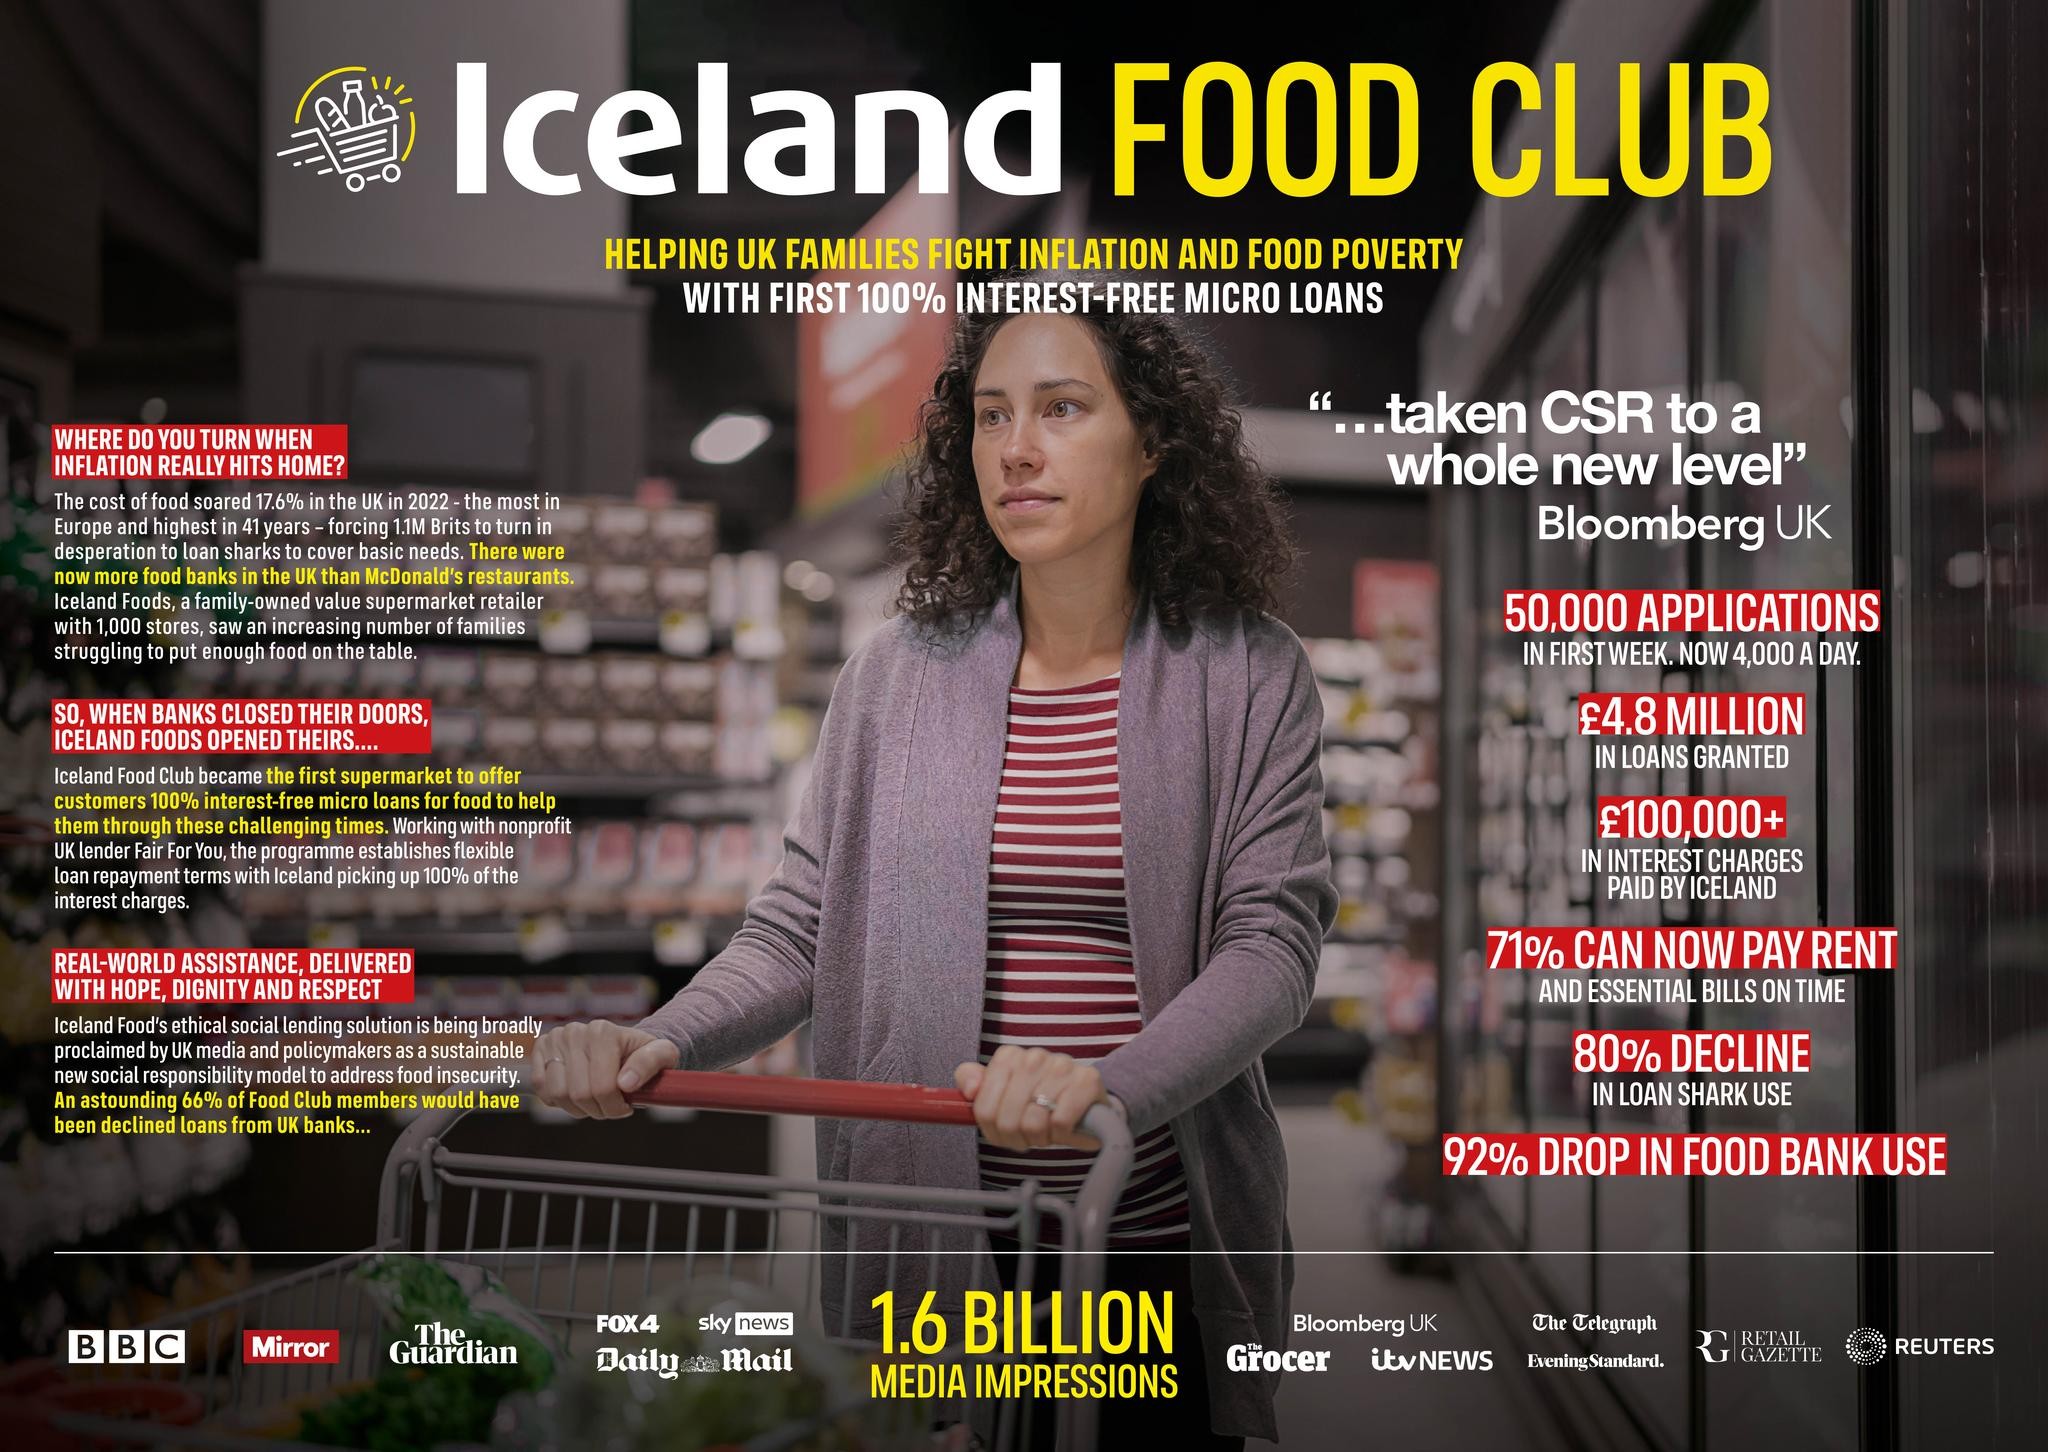 ICELAND FOOD CLUB